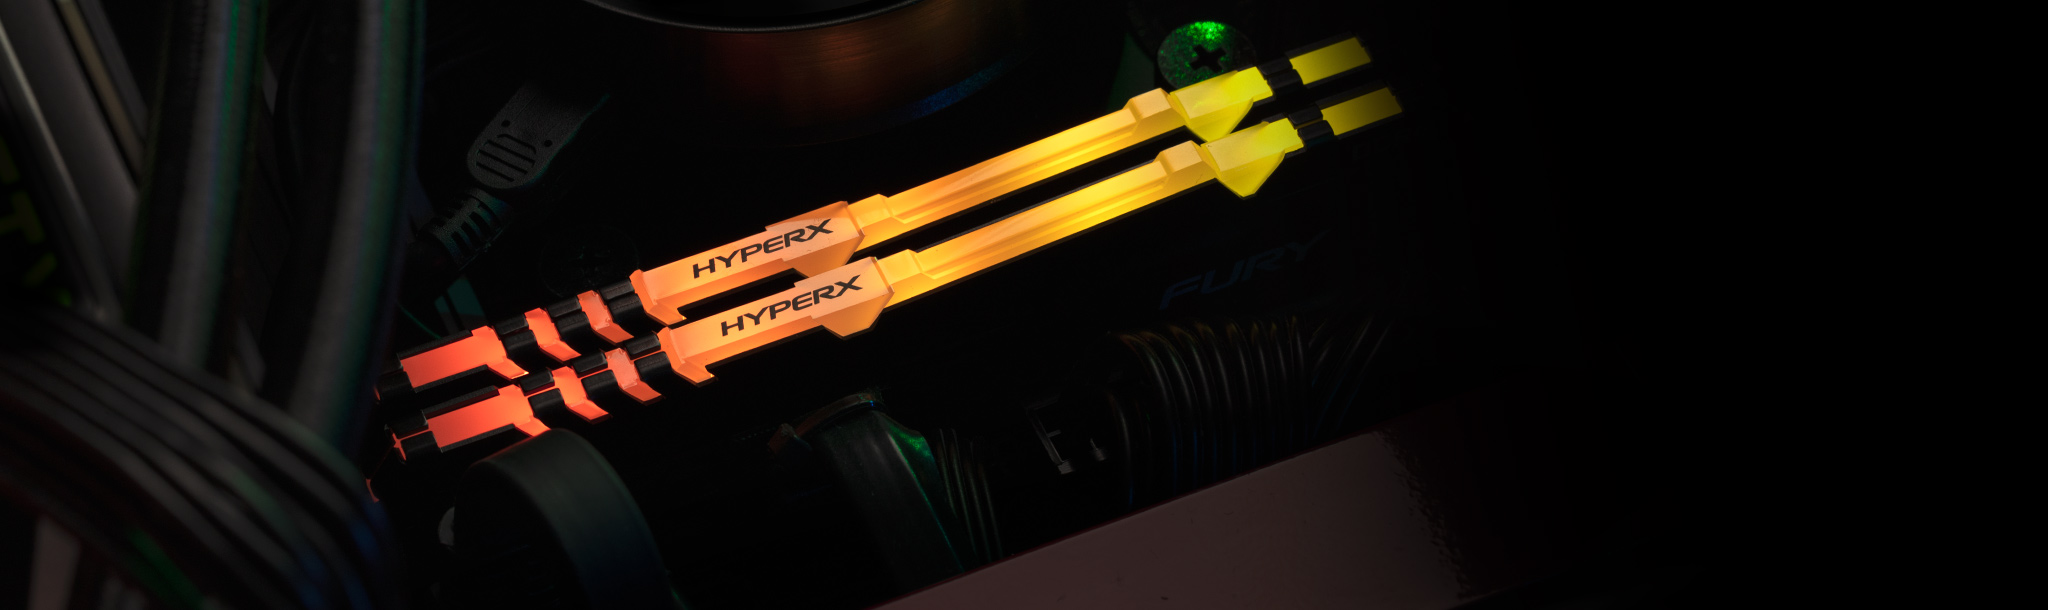 PC de bureau gamin avec mémoire HyperX RGB.